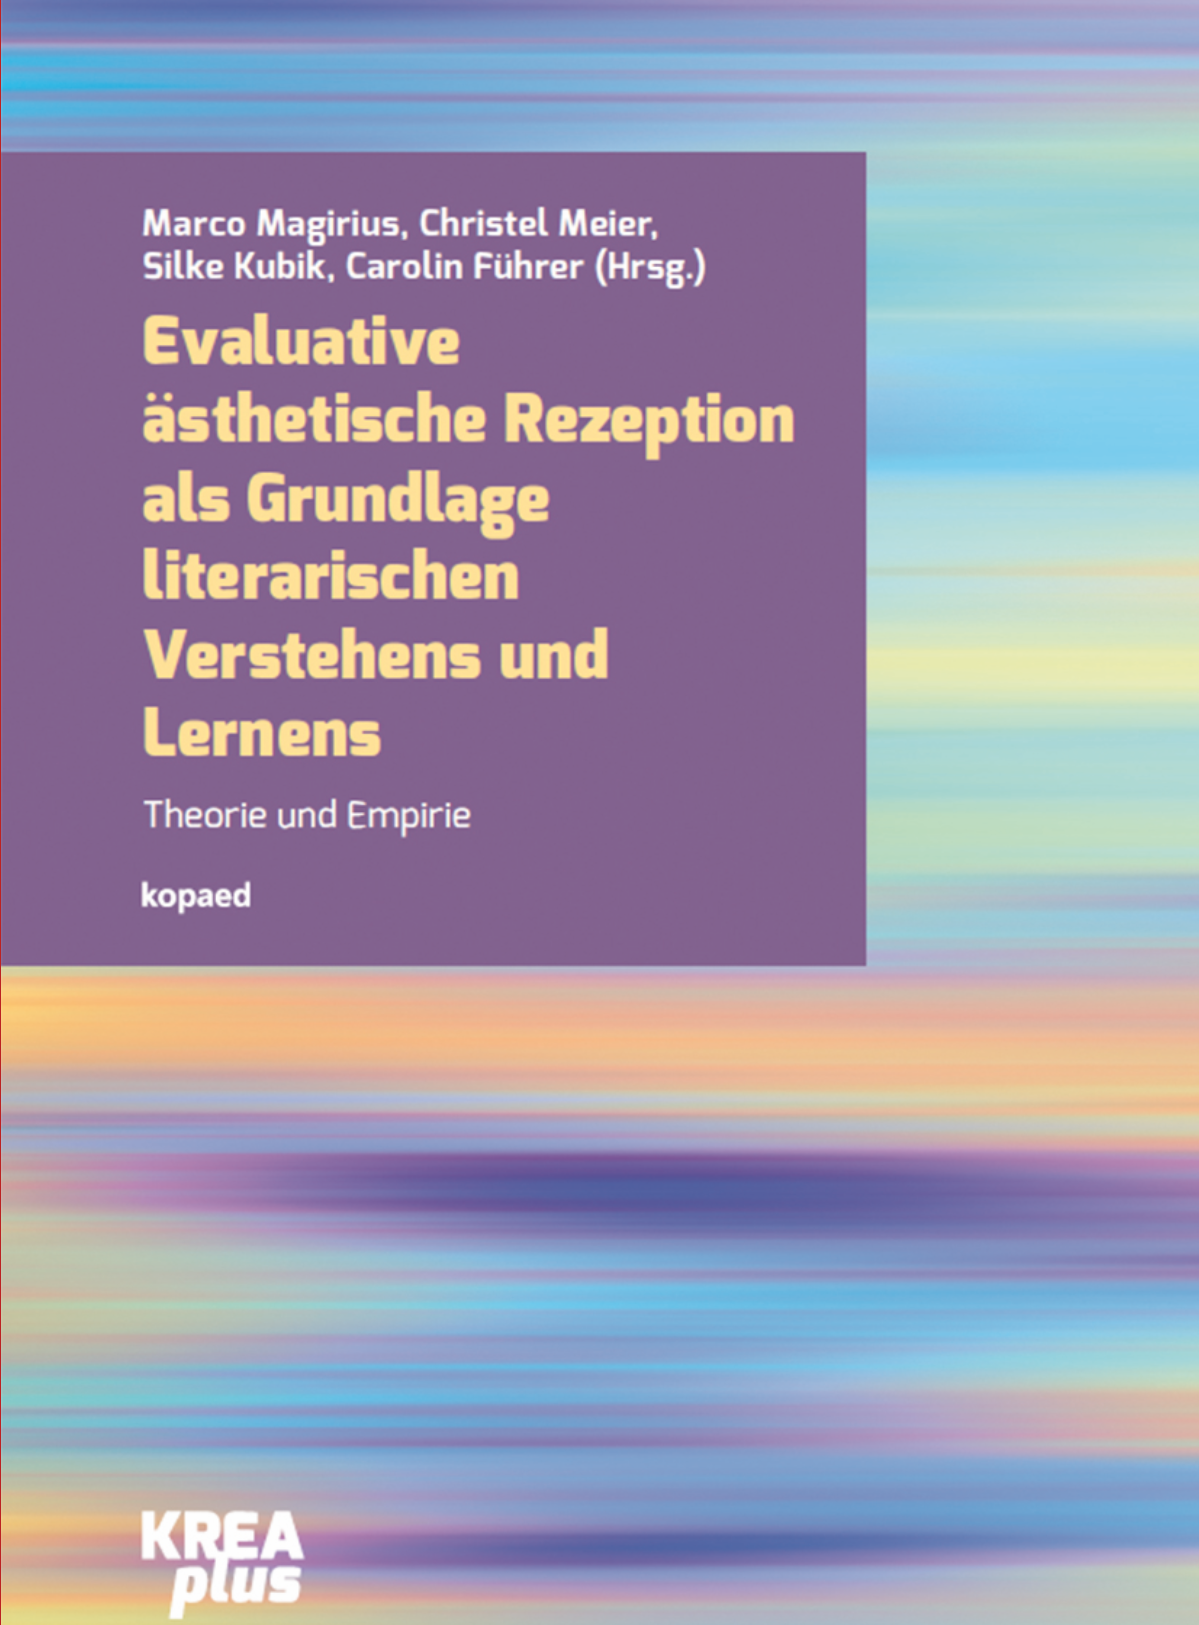 cover " Evaluative ästhetische Rezeption als Grundlage literarischen Verstehens und Lernens"